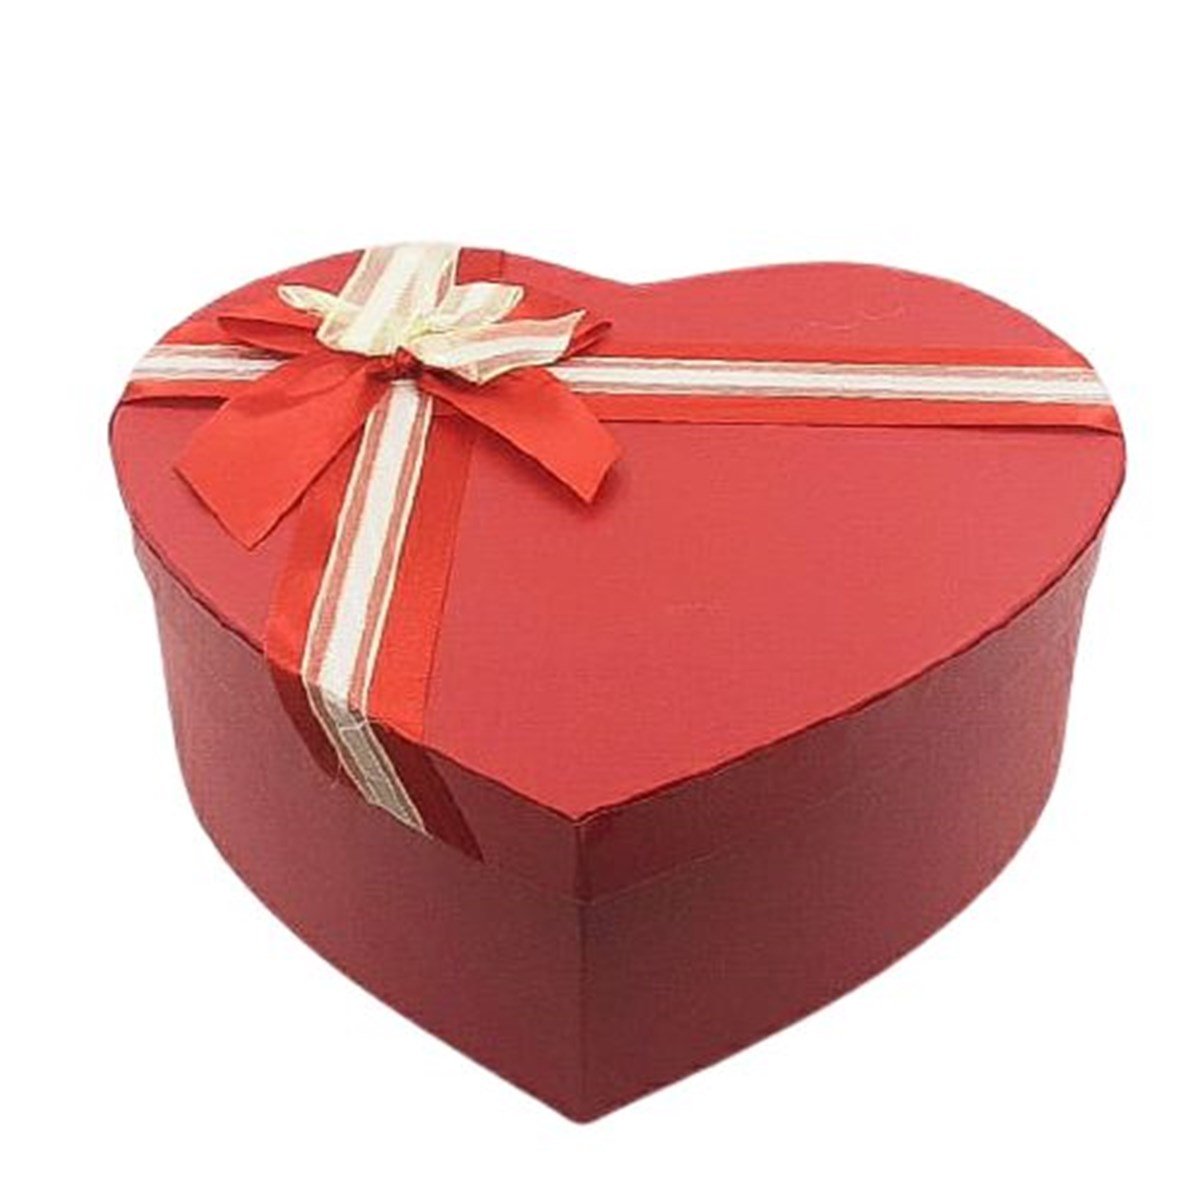 Sevgiliye Kalp Kutu İçinde Hediye Paketi - Çılgın Trend Ürünleri